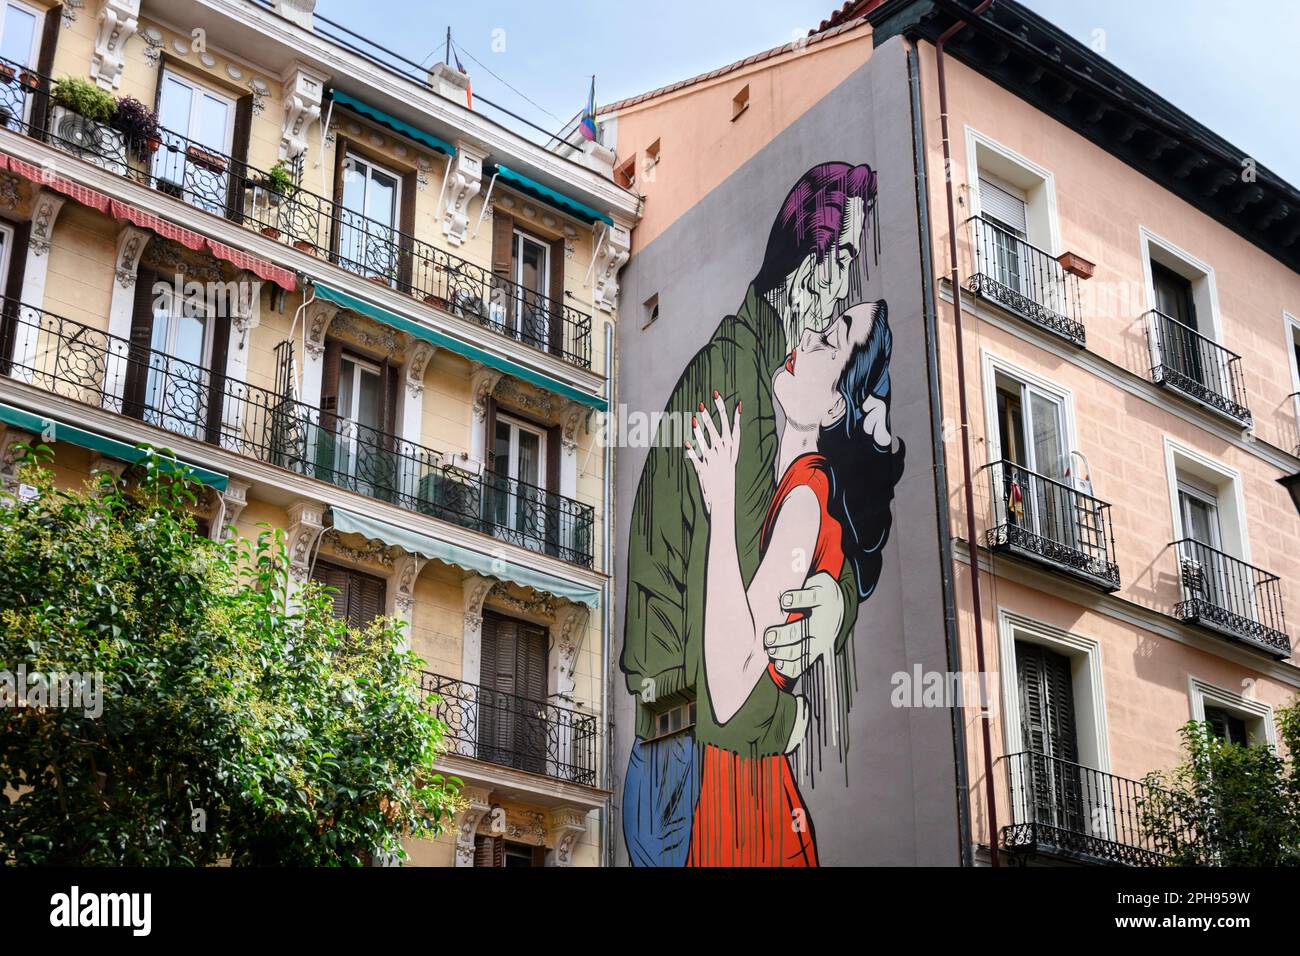 Wandgemälde genannt Run Away vom Künstler D*Face auf einem Gebäude in der Calle de Embajadores, im multikulturellen Viertel Embajadores, Zentrum von Madrid, Spanien Stockfoto